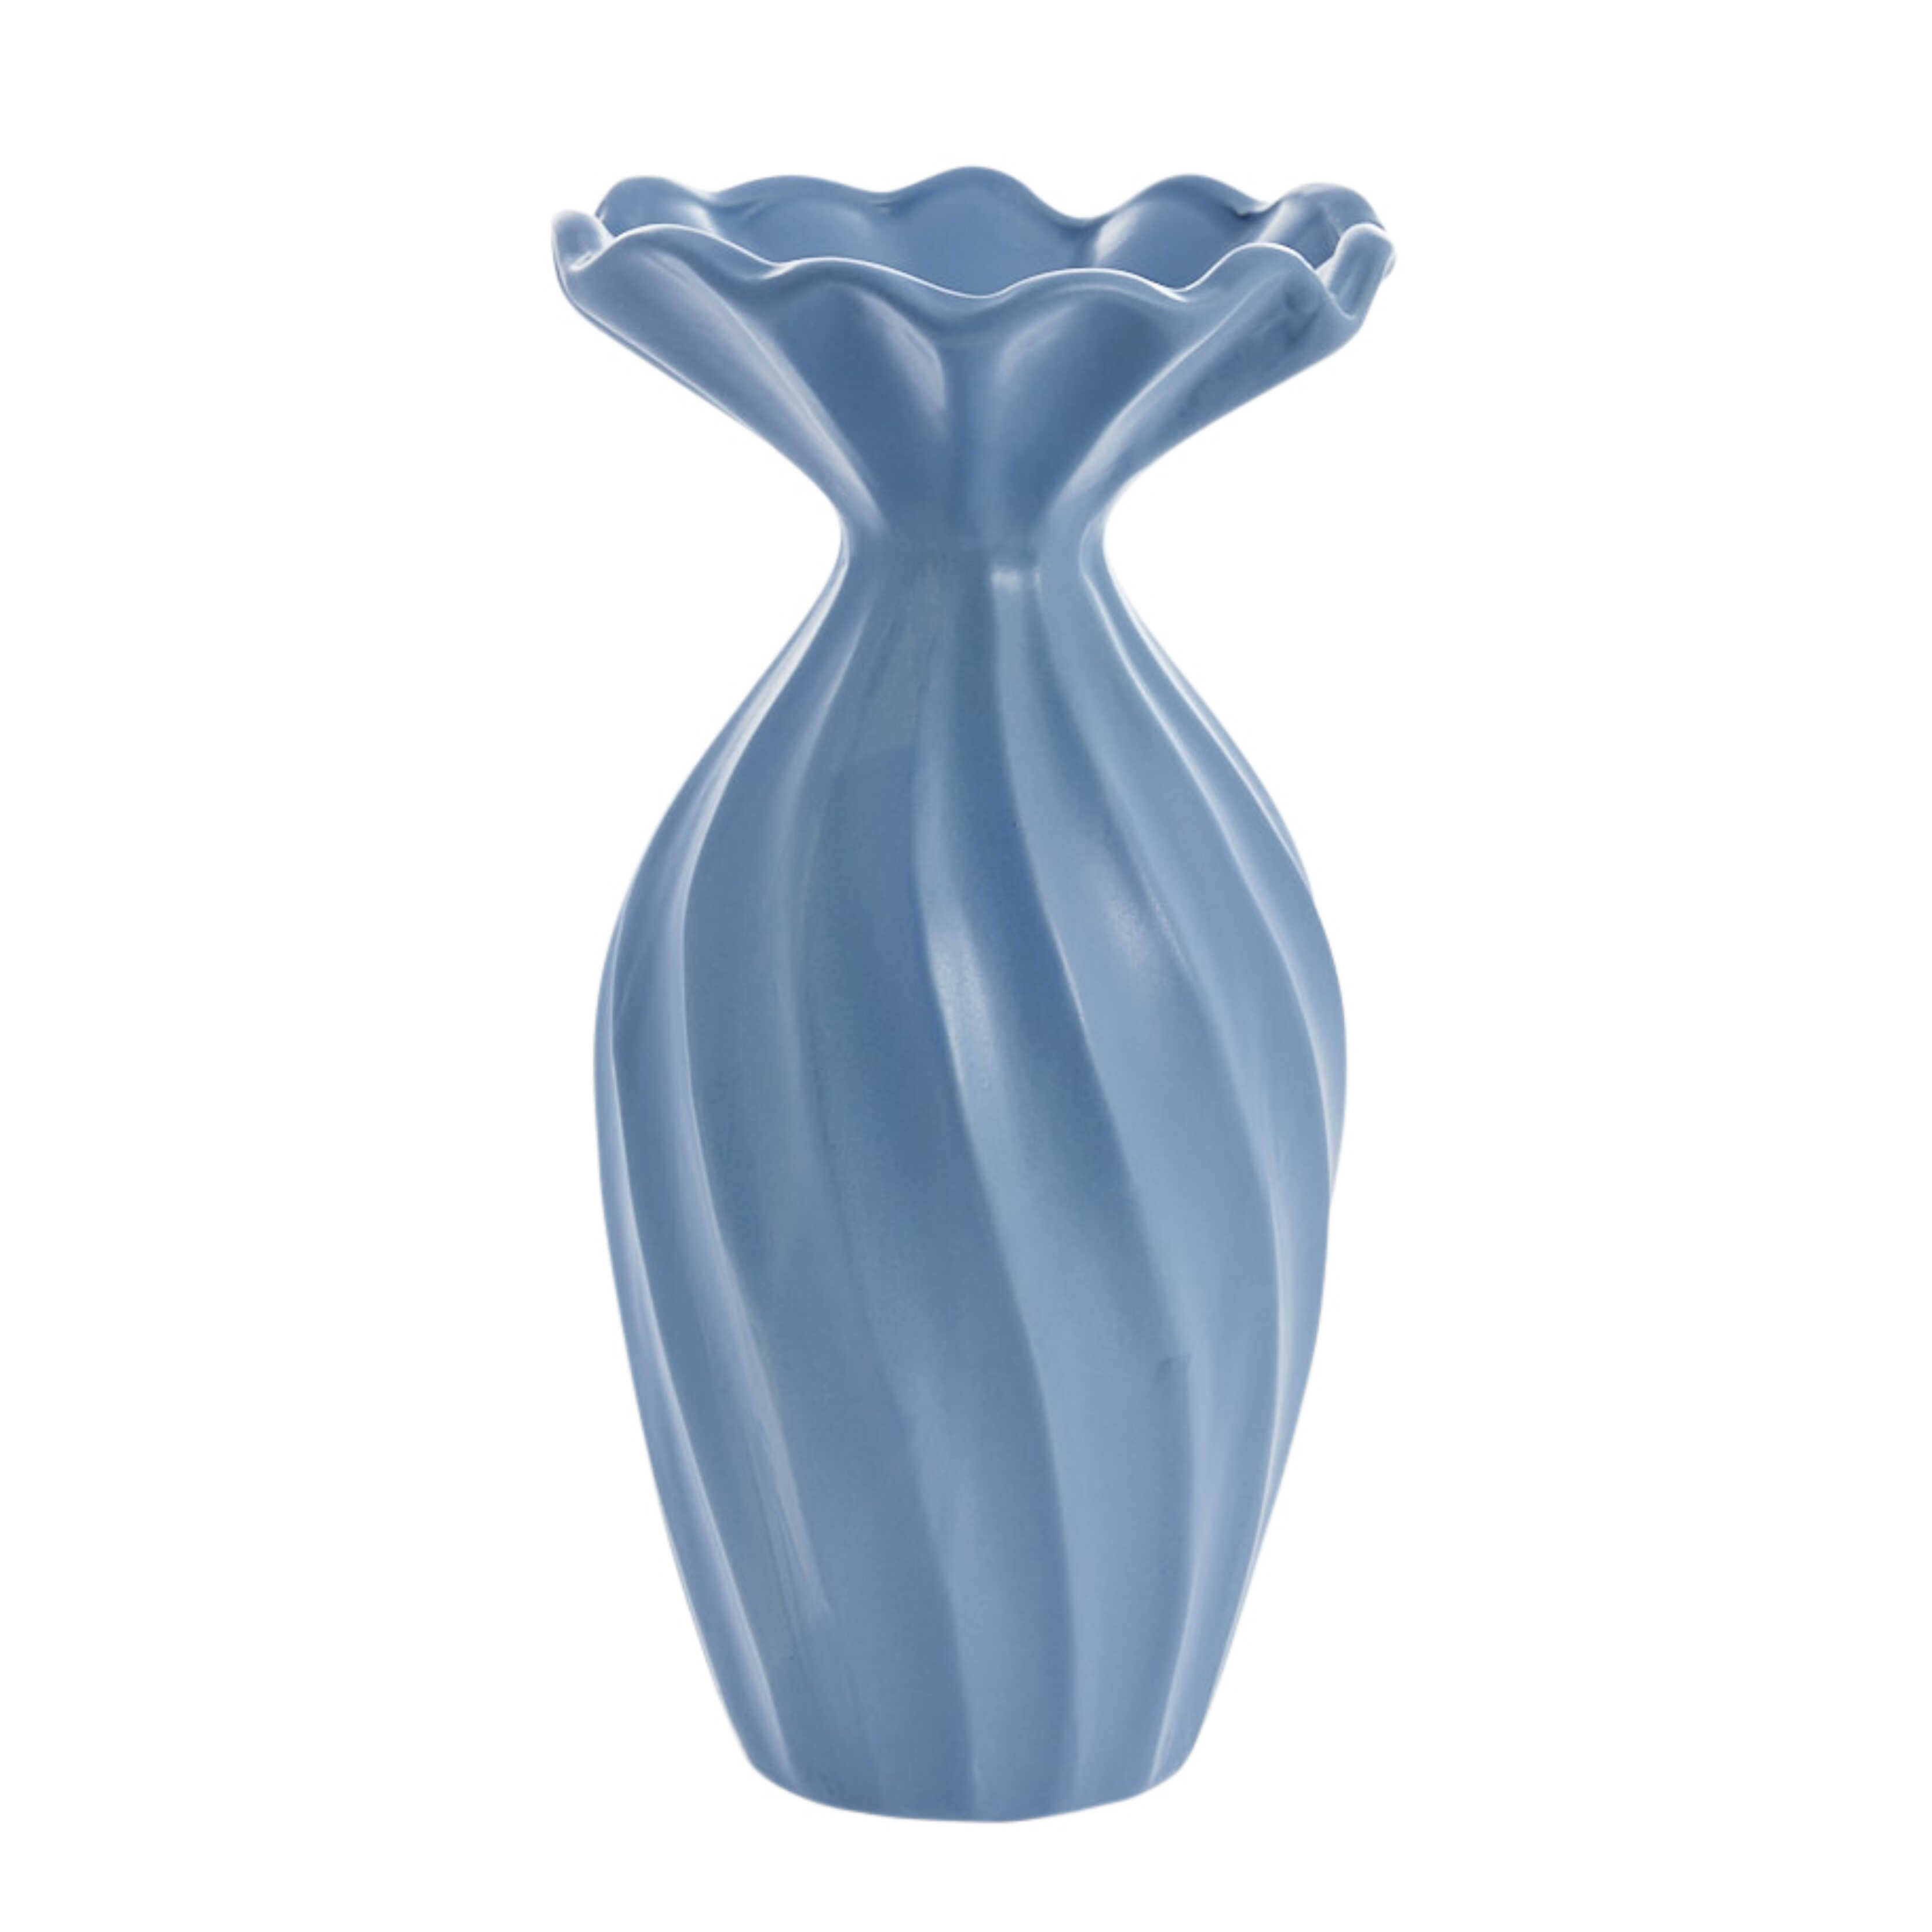 6: Blå Susille keramik vase fra Lene Bjerre - H 25 cm.